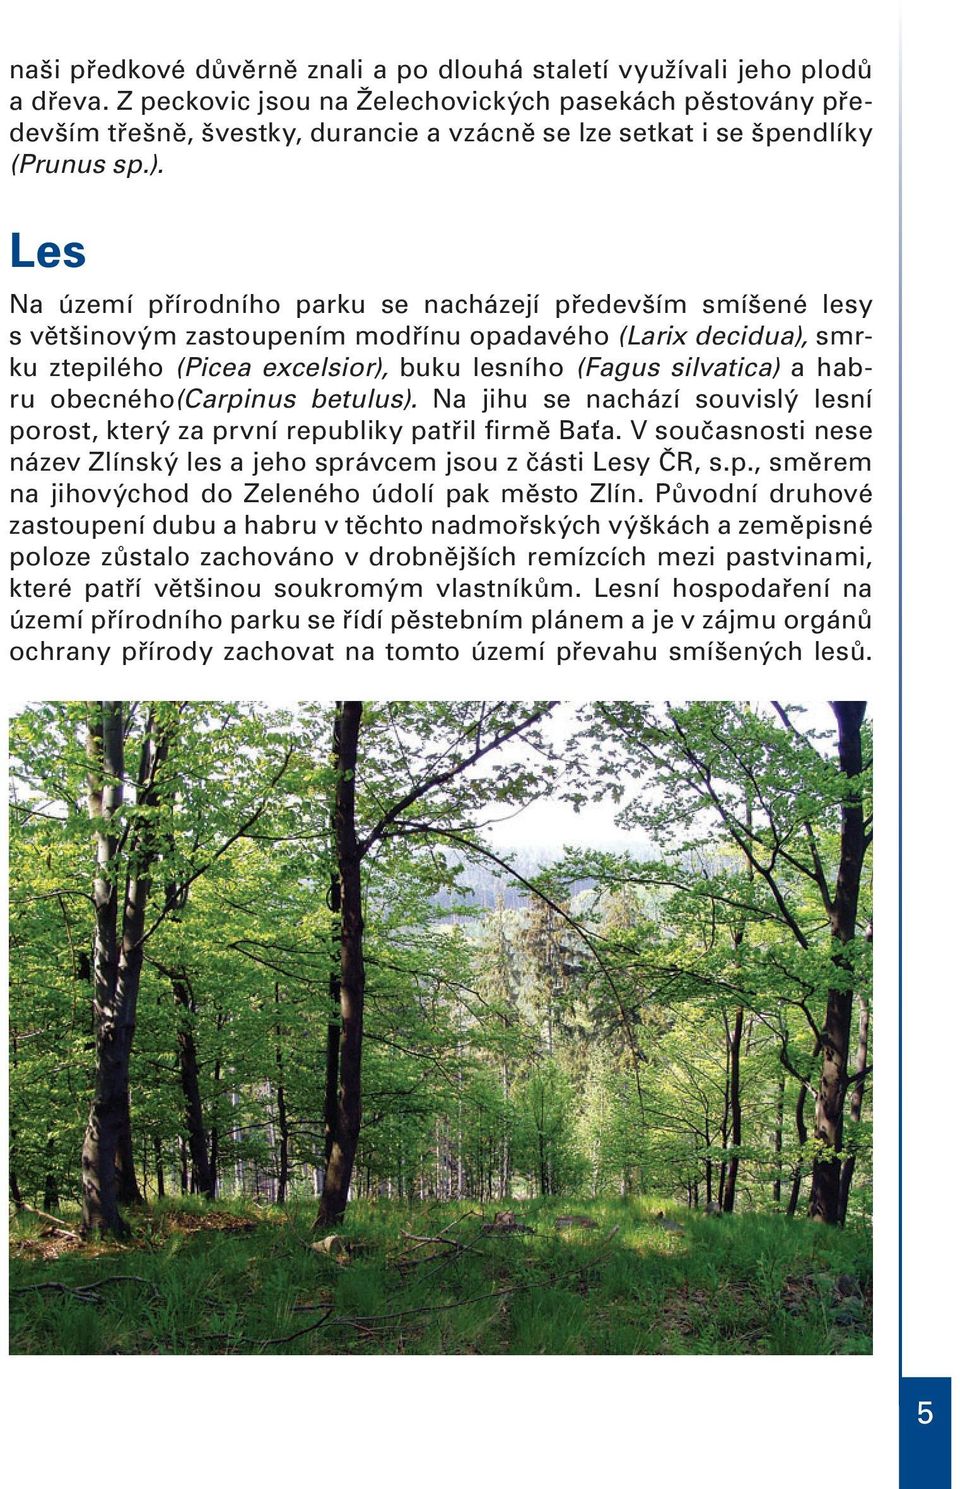 Les Na území přírodního parku se nacházejí především smíšené lesy s většinovým zastoupením modřínu opadavého (Larix decidua), smrku ztepilého (Picea excelsior), buku lesního (Fagus silvatica) a habru